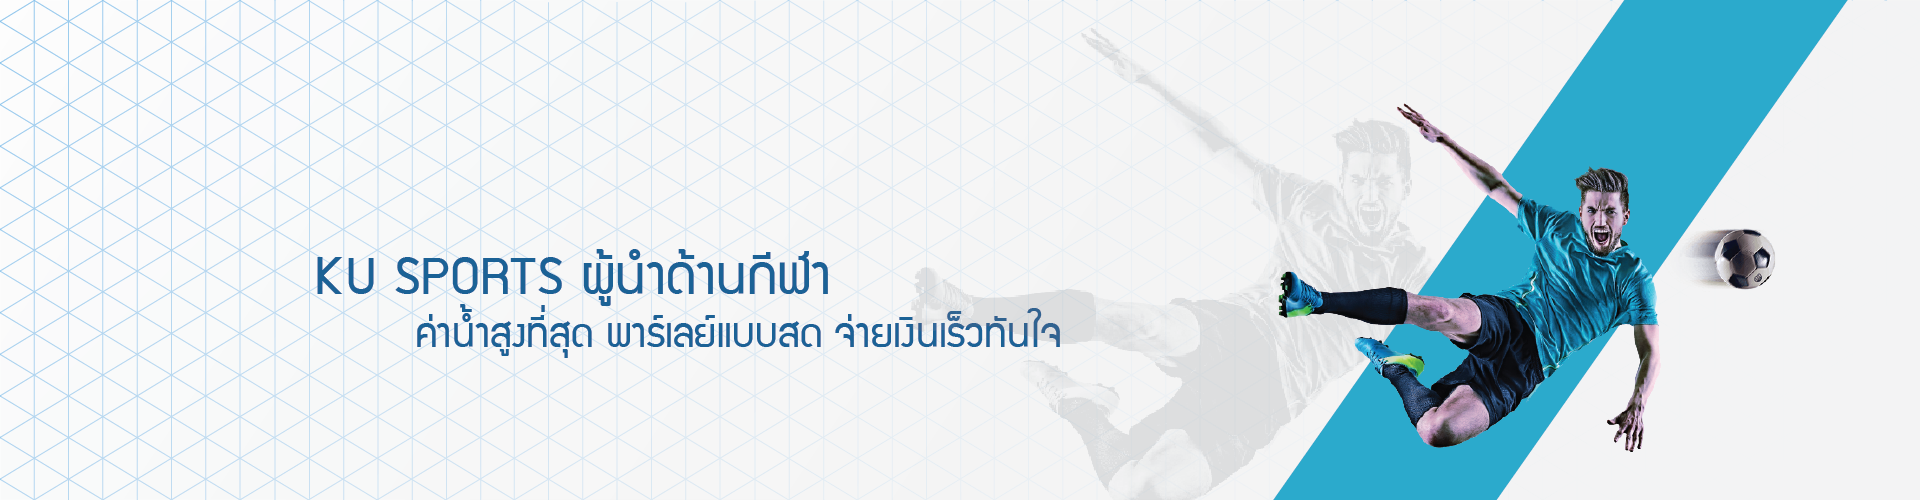 KUBET Thailand - ผู้นำด้านกีฬา